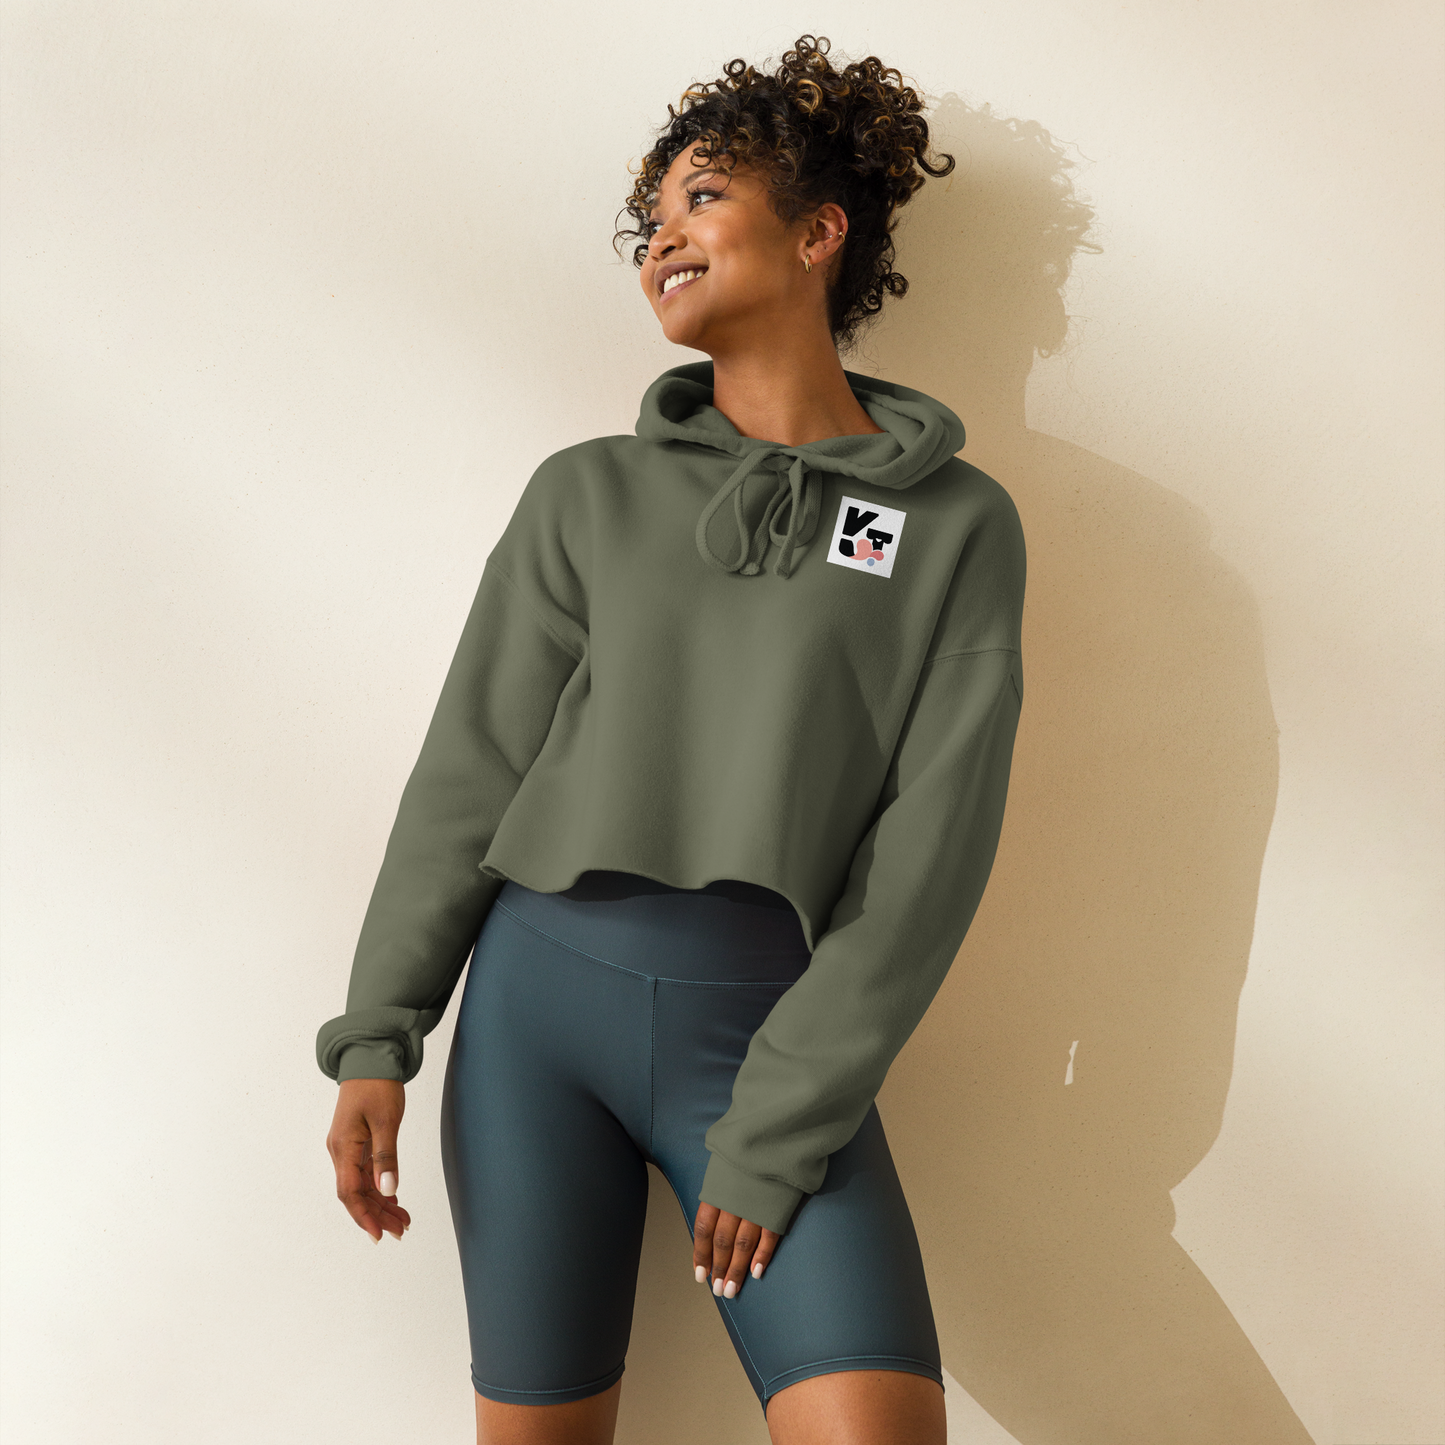 Kurzer Crop-Hoodie "Tunnelrumps" mit Logoaufdruck vom Hundesportmarke Klexgetier. Das Modell zeigt eine lächelnde Frau mit lockigem Haar, die den olivgrünen Pullover in einem hellen Ambiente trägt.